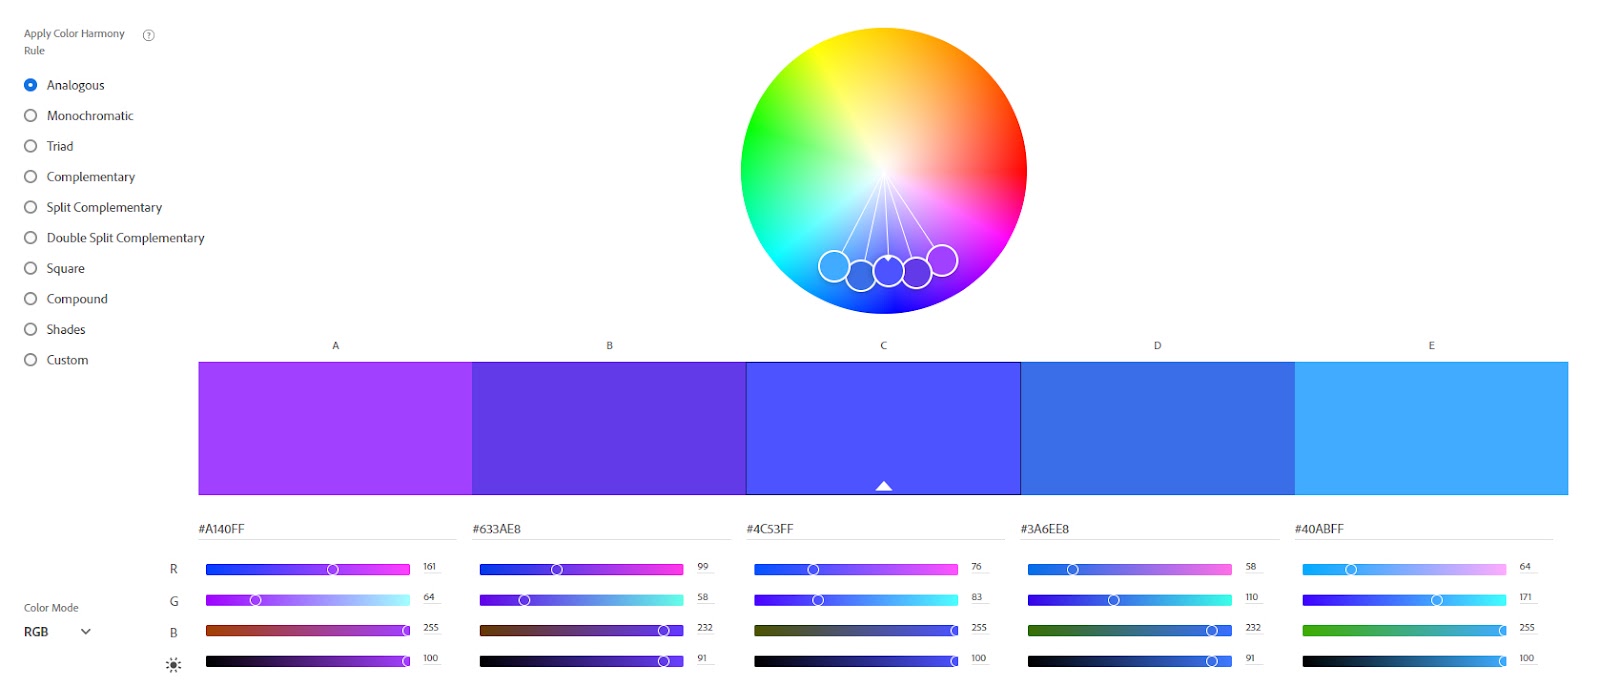 Imagem que mostra a página inicial do site Adobe Color. Na parte central e superior da imagem, há um círculo de cores utilizado para a pesquisa de paleta de cores.